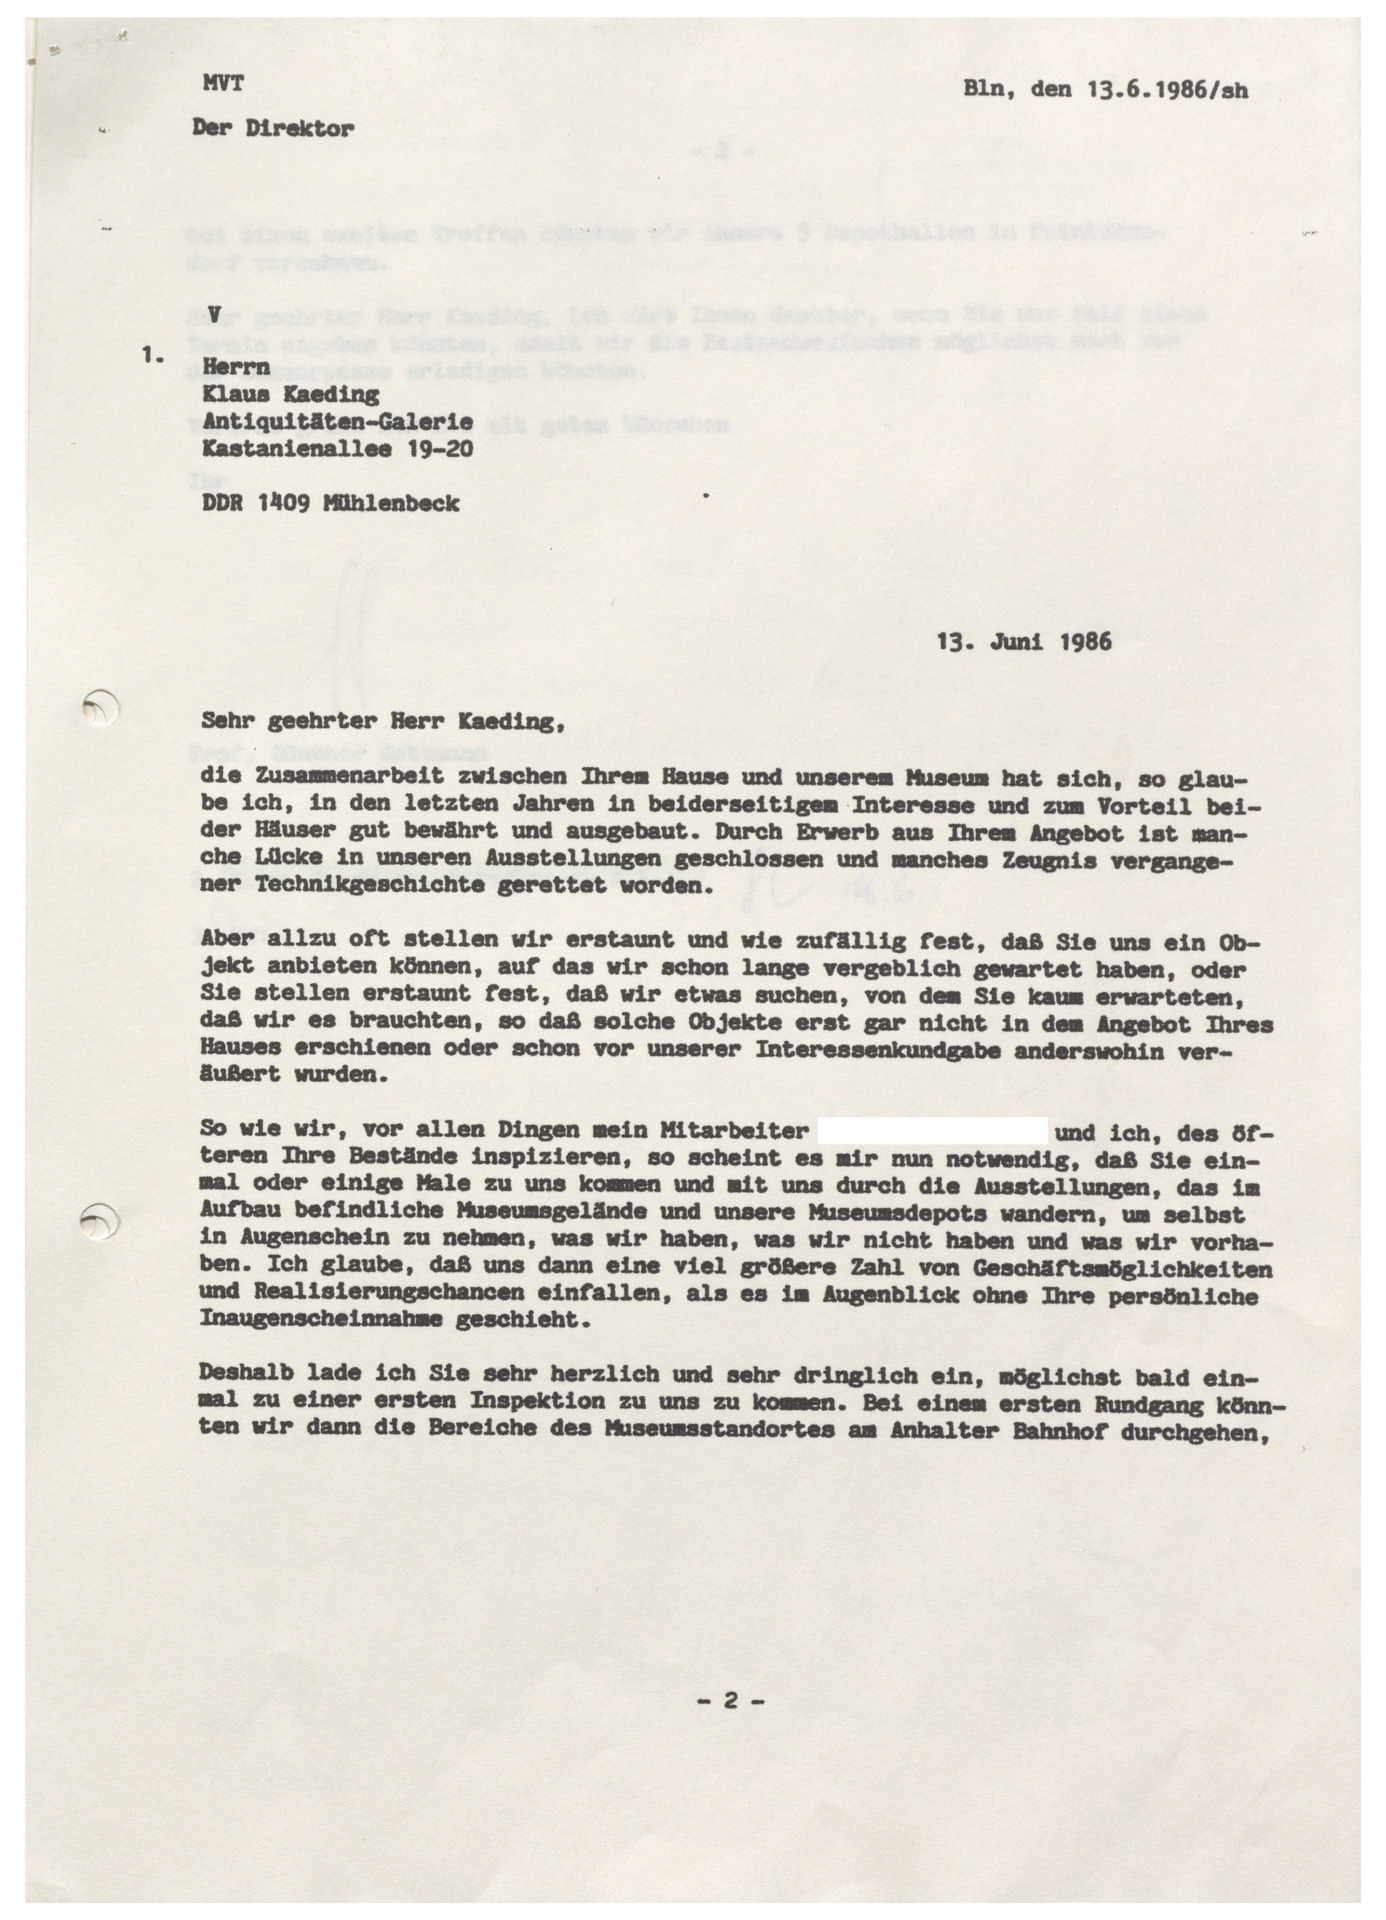 Schreiben Gottmann an Kaeding 13.06.1986.png